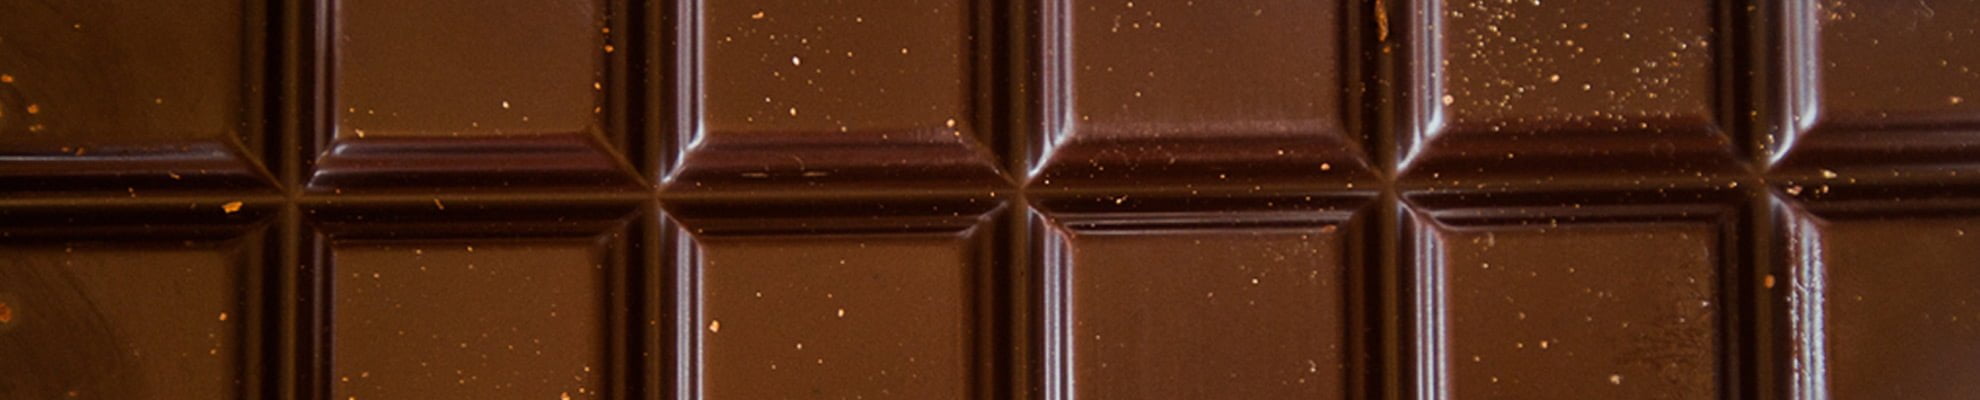 Na sliki je tabela čokolade, temna kakavnata čokolada in konoplja sta zmagovalna kombinacija.